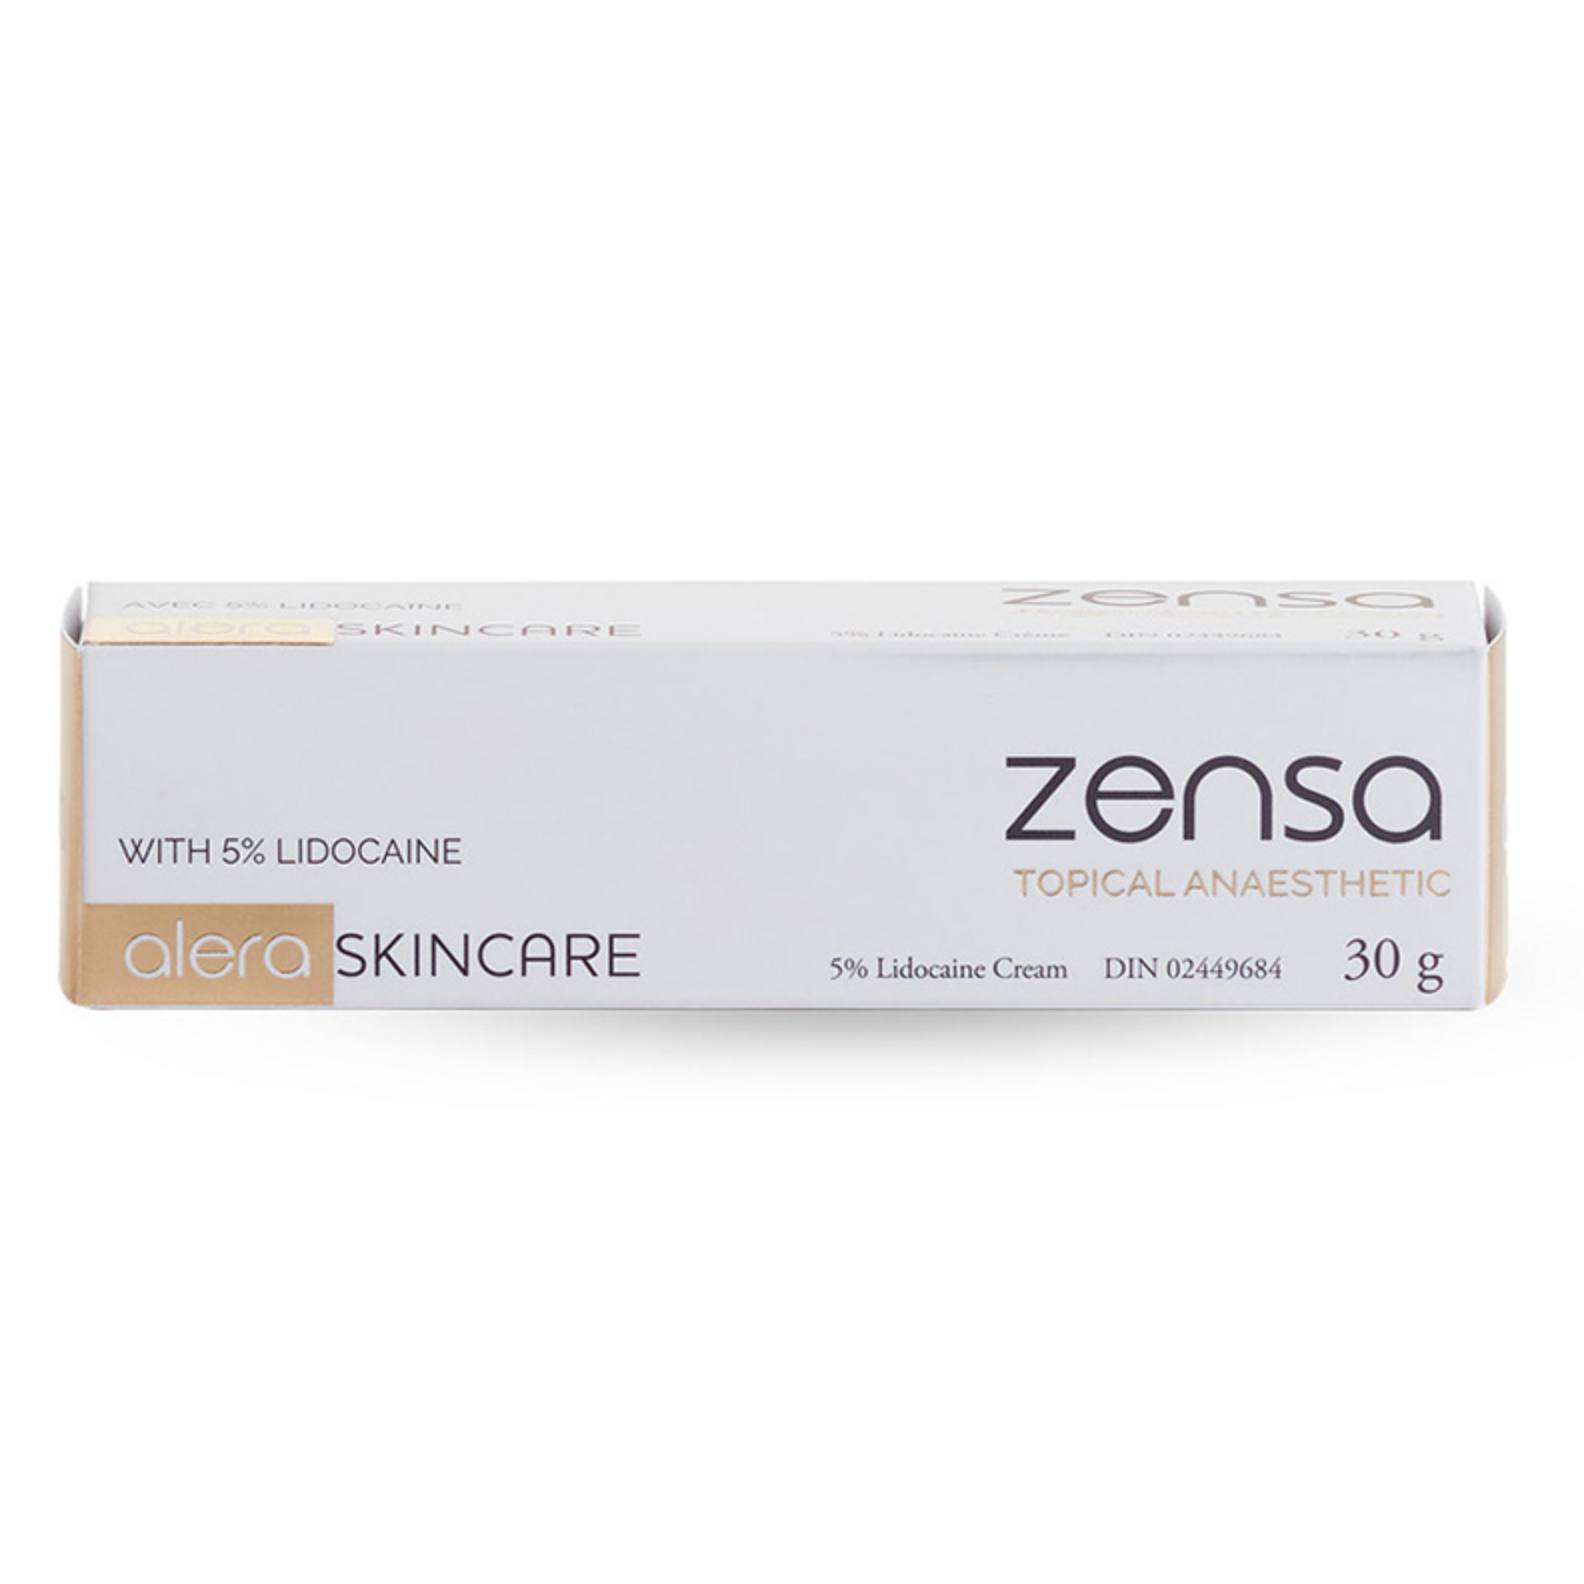 Brows - Zensa Numbing Cream